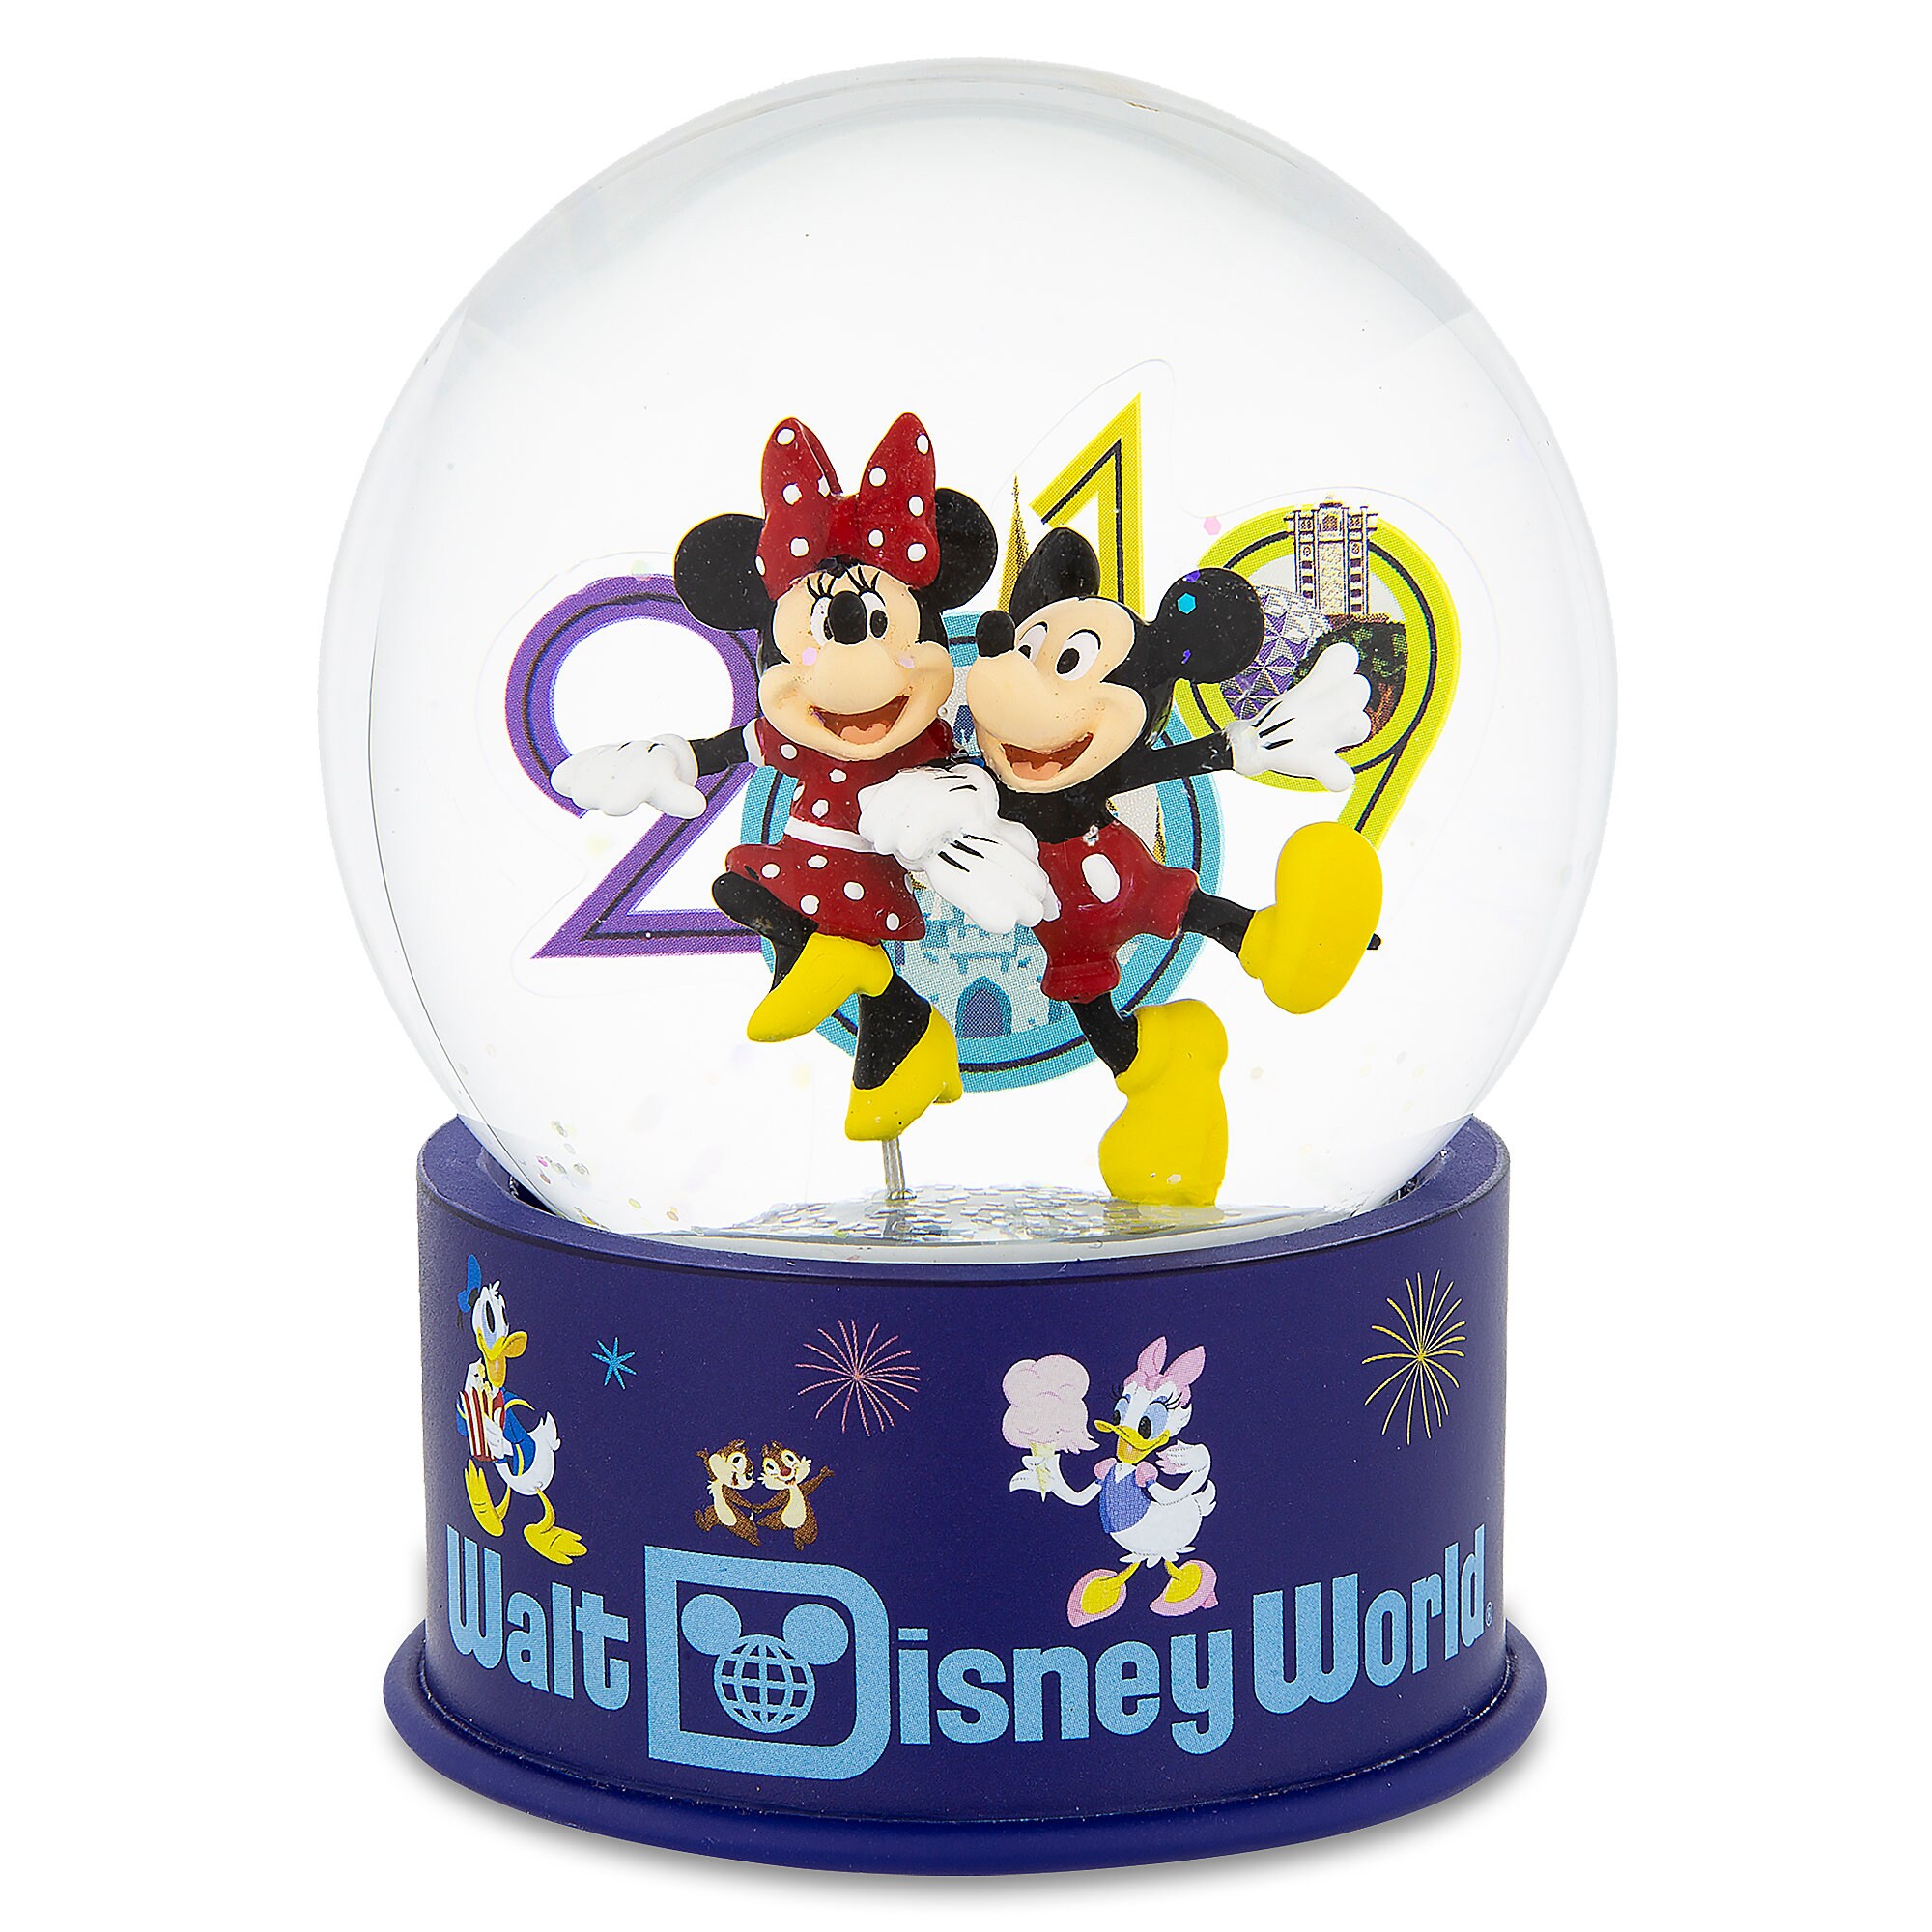 Mickey and Minnie Mouse Mini Snowglobe - Walt Disney World 2019